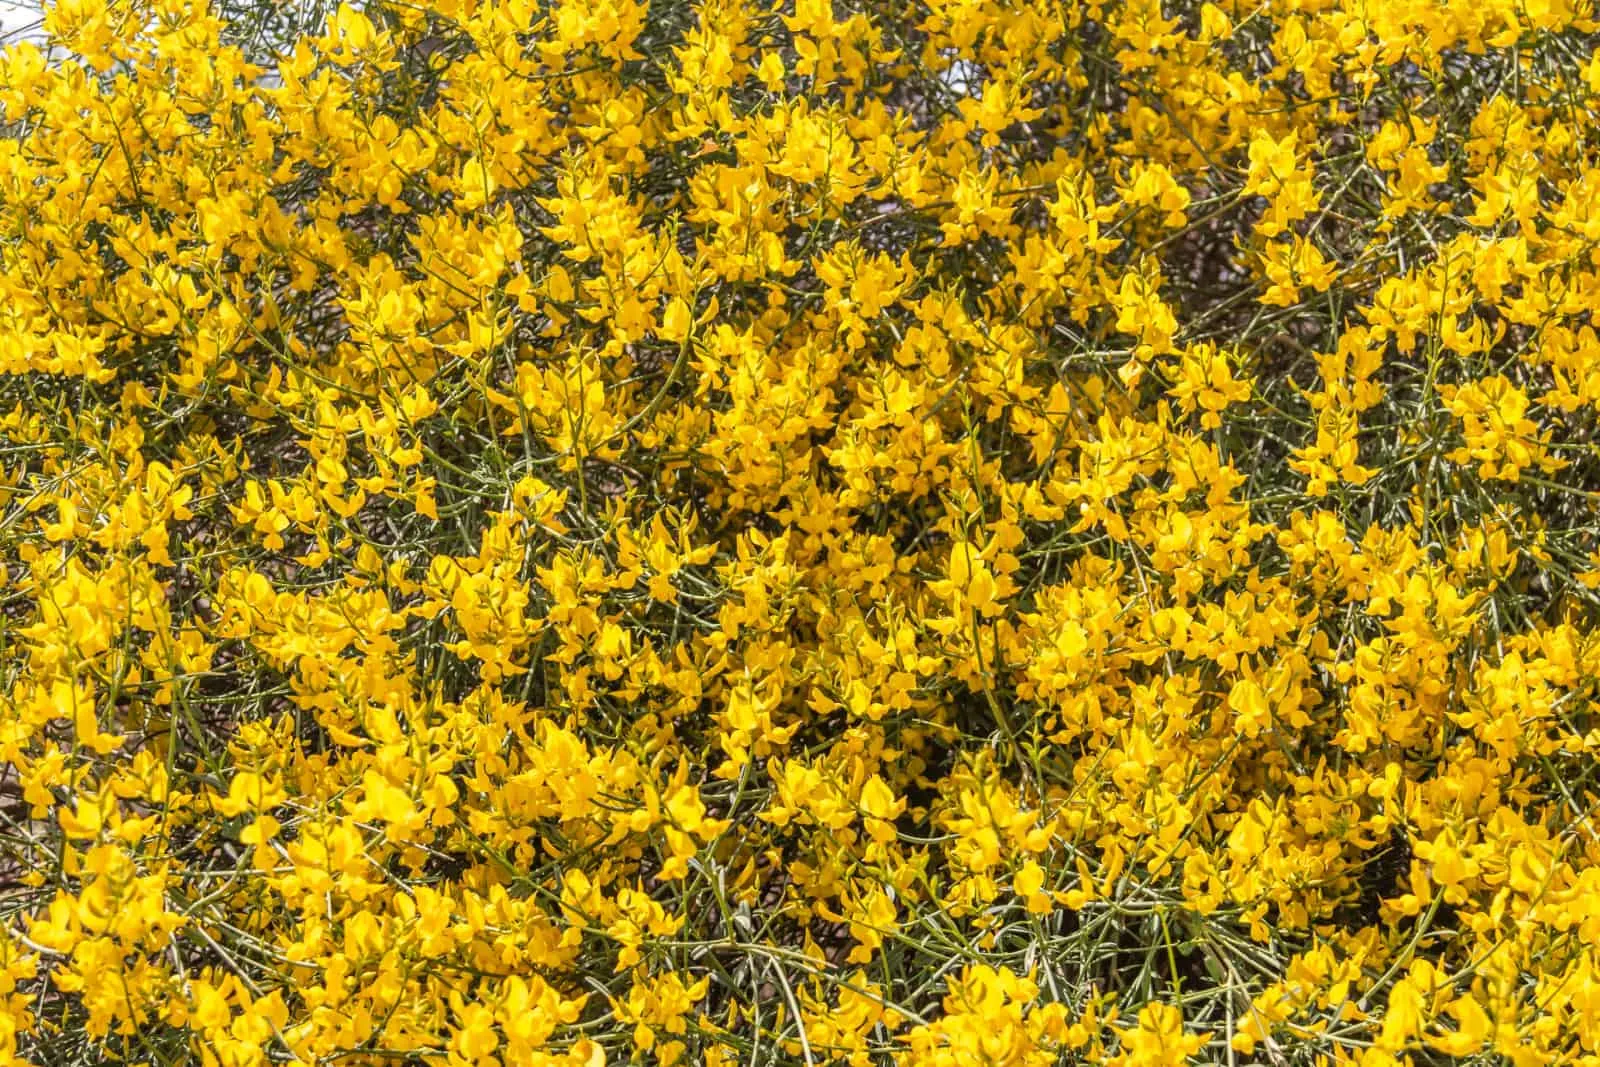 Yellow Spanish Broom (Spartium junceum)